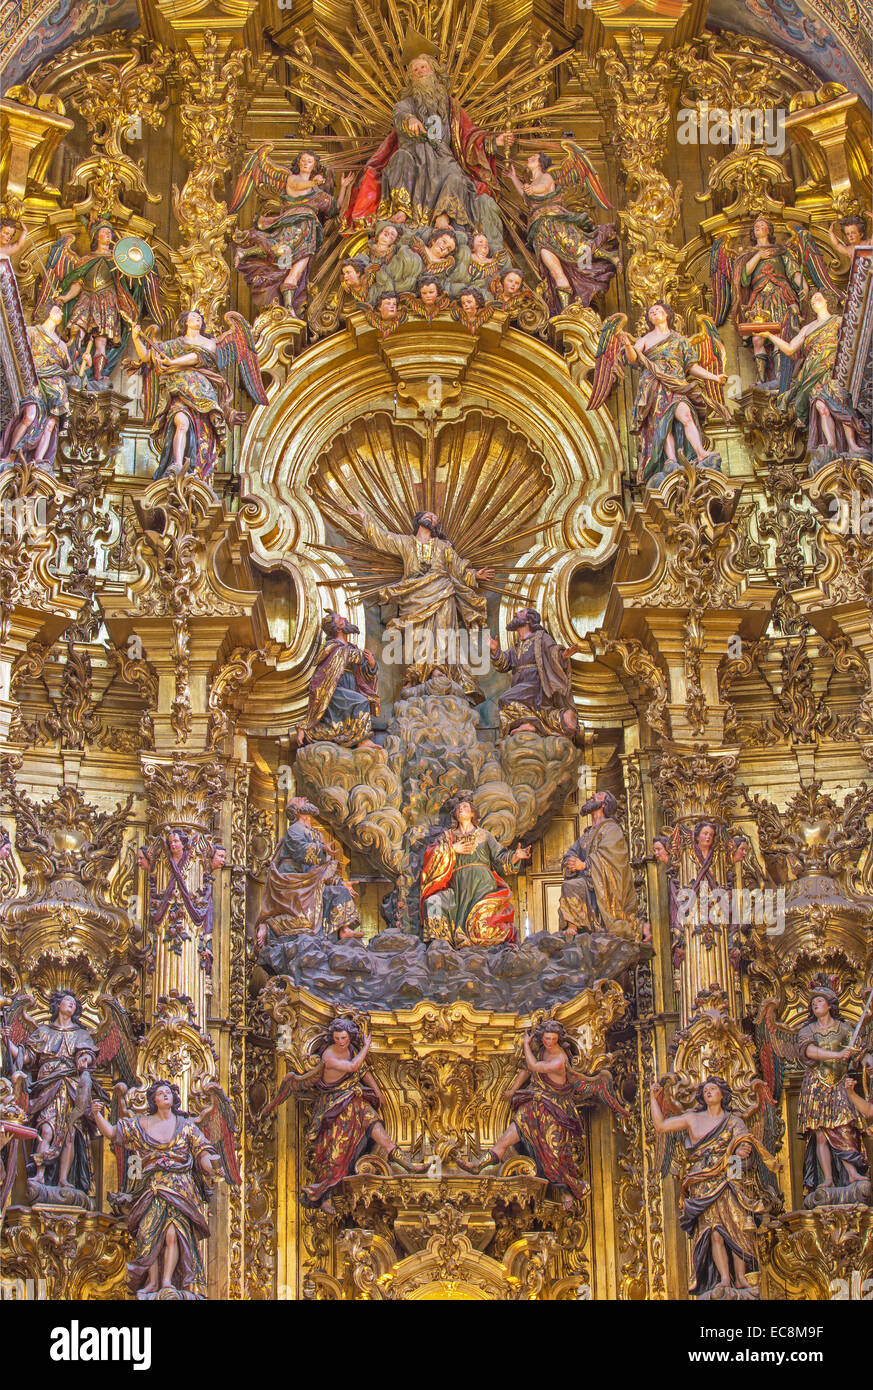 Séville - partie centrale de l'autel principal (1770 - 1778) par Cayetano de Acosta dans l'église baroque d'El Salvador (Iglesia del Salvador) Banque D'Images